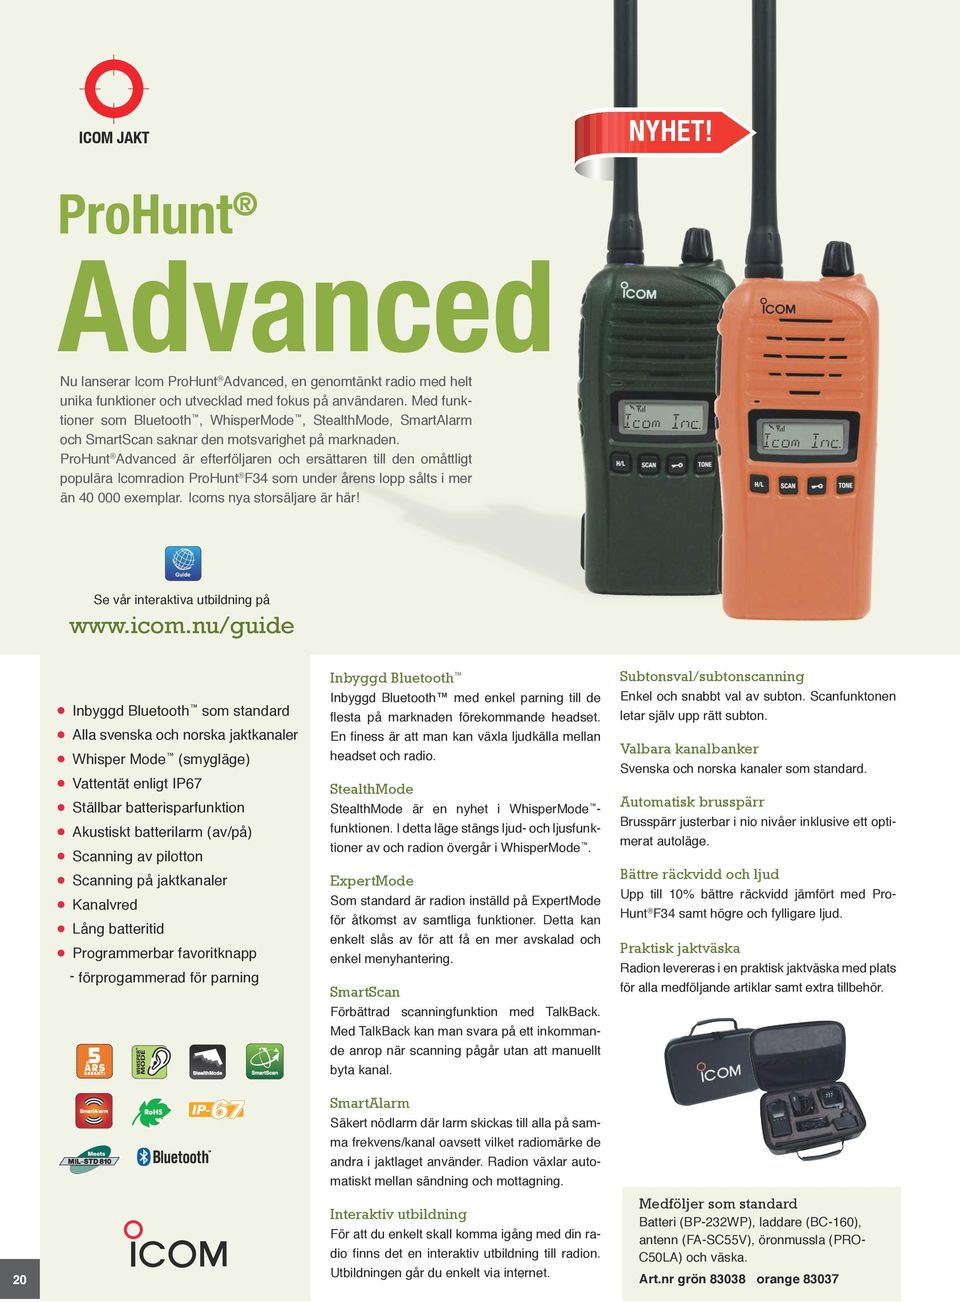 ProHunt Advanced är efterföljaren och ersättaren till den omåttligt populära Icomradion ProHunt F34 som under årens lopp sålts i mer än 40 000 exemplar. Icoms nya storsäljare är här!